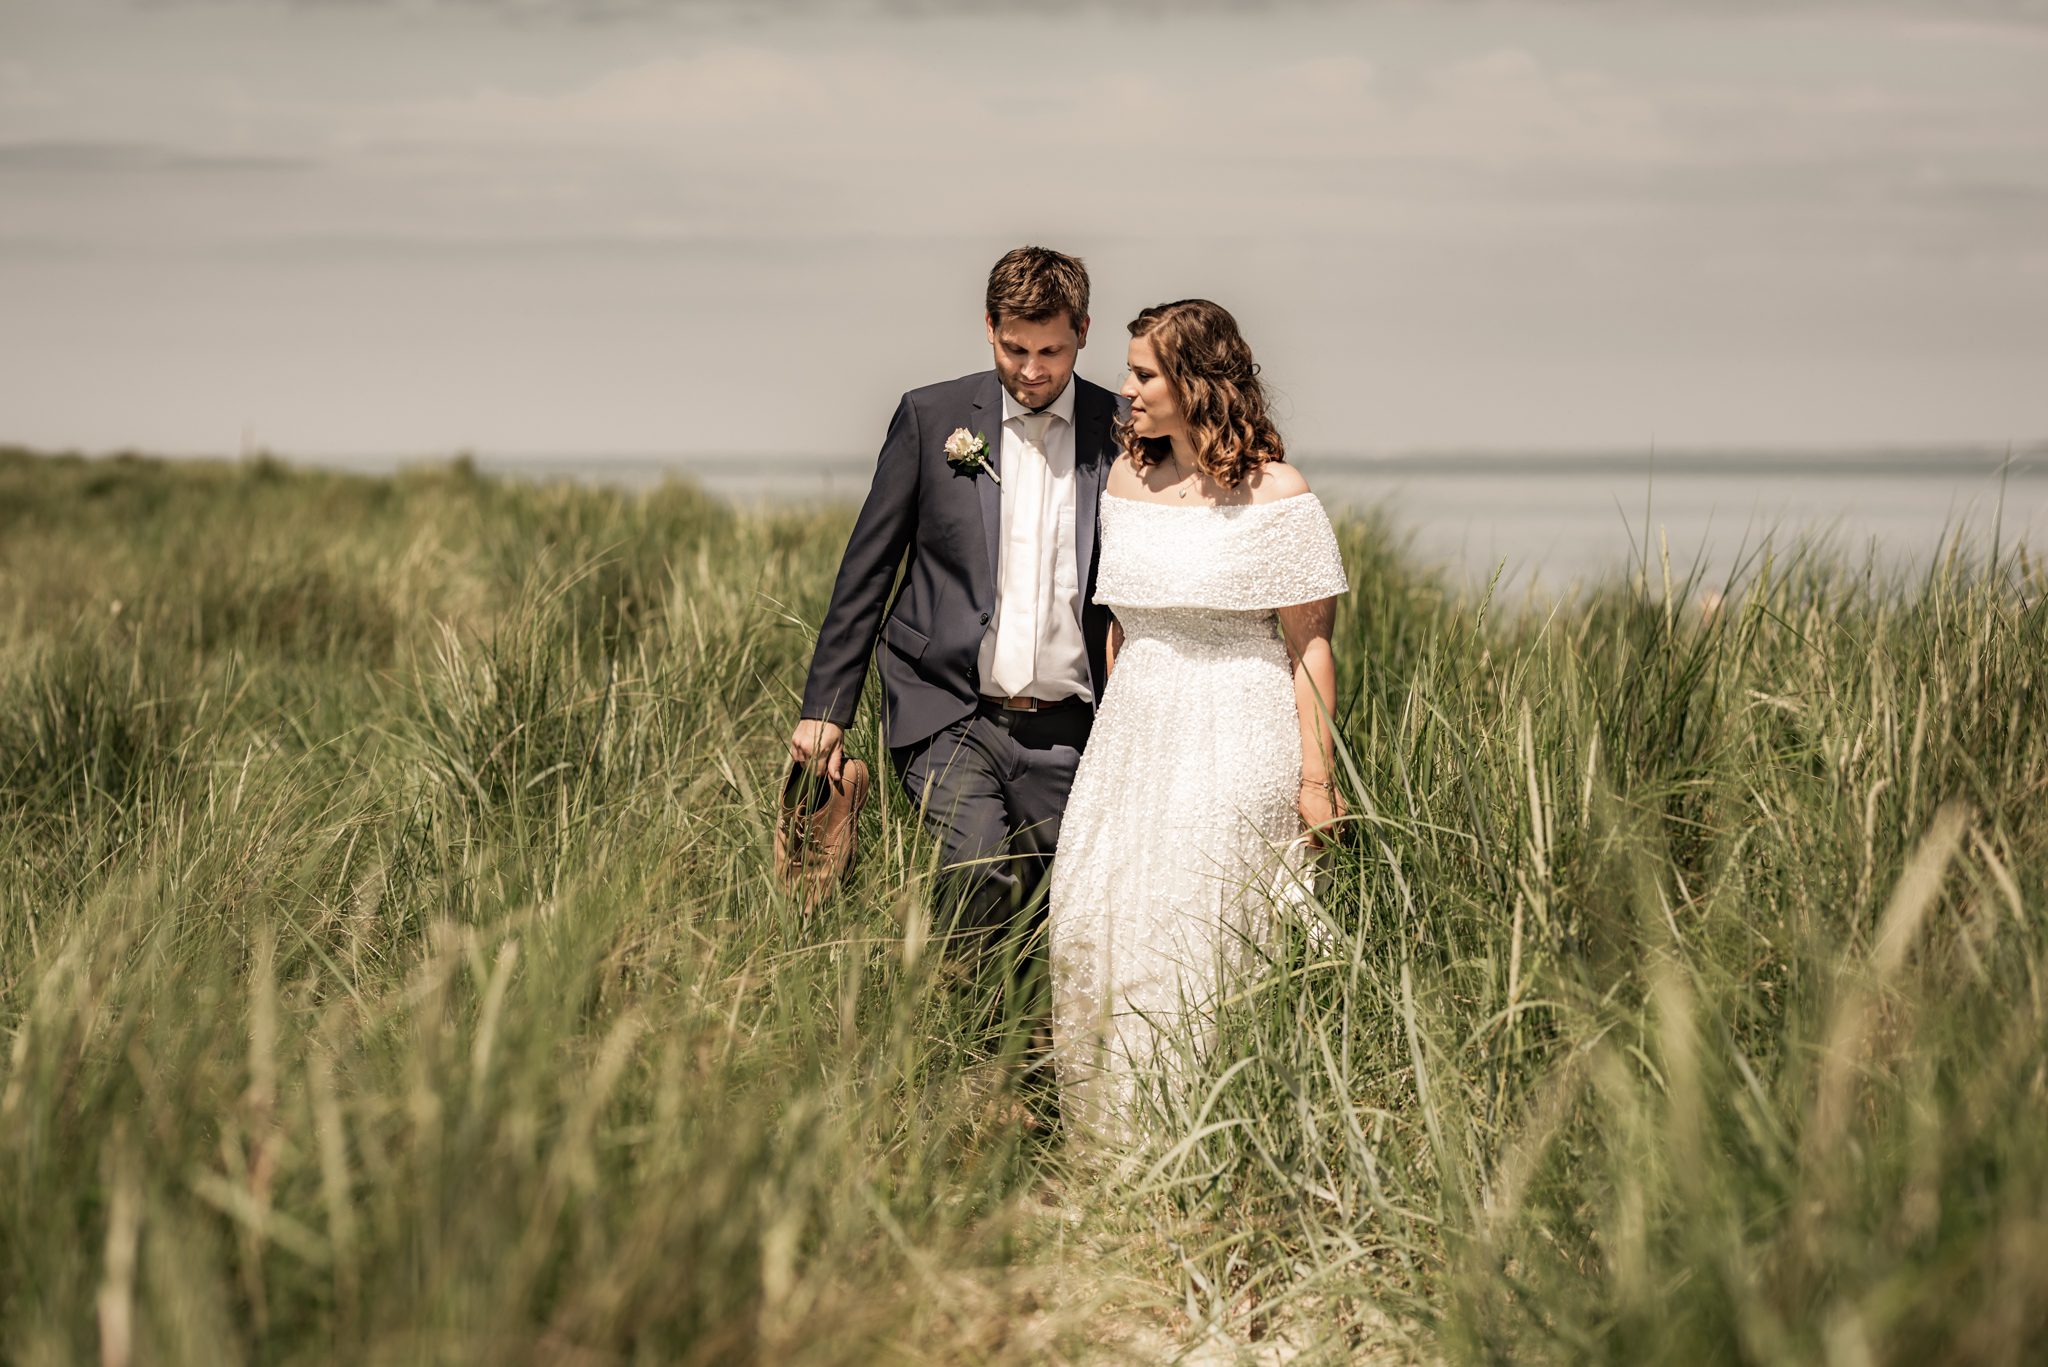 Janine und Sebastian | Elopement Wedding in Hooksiel und Schillig 1